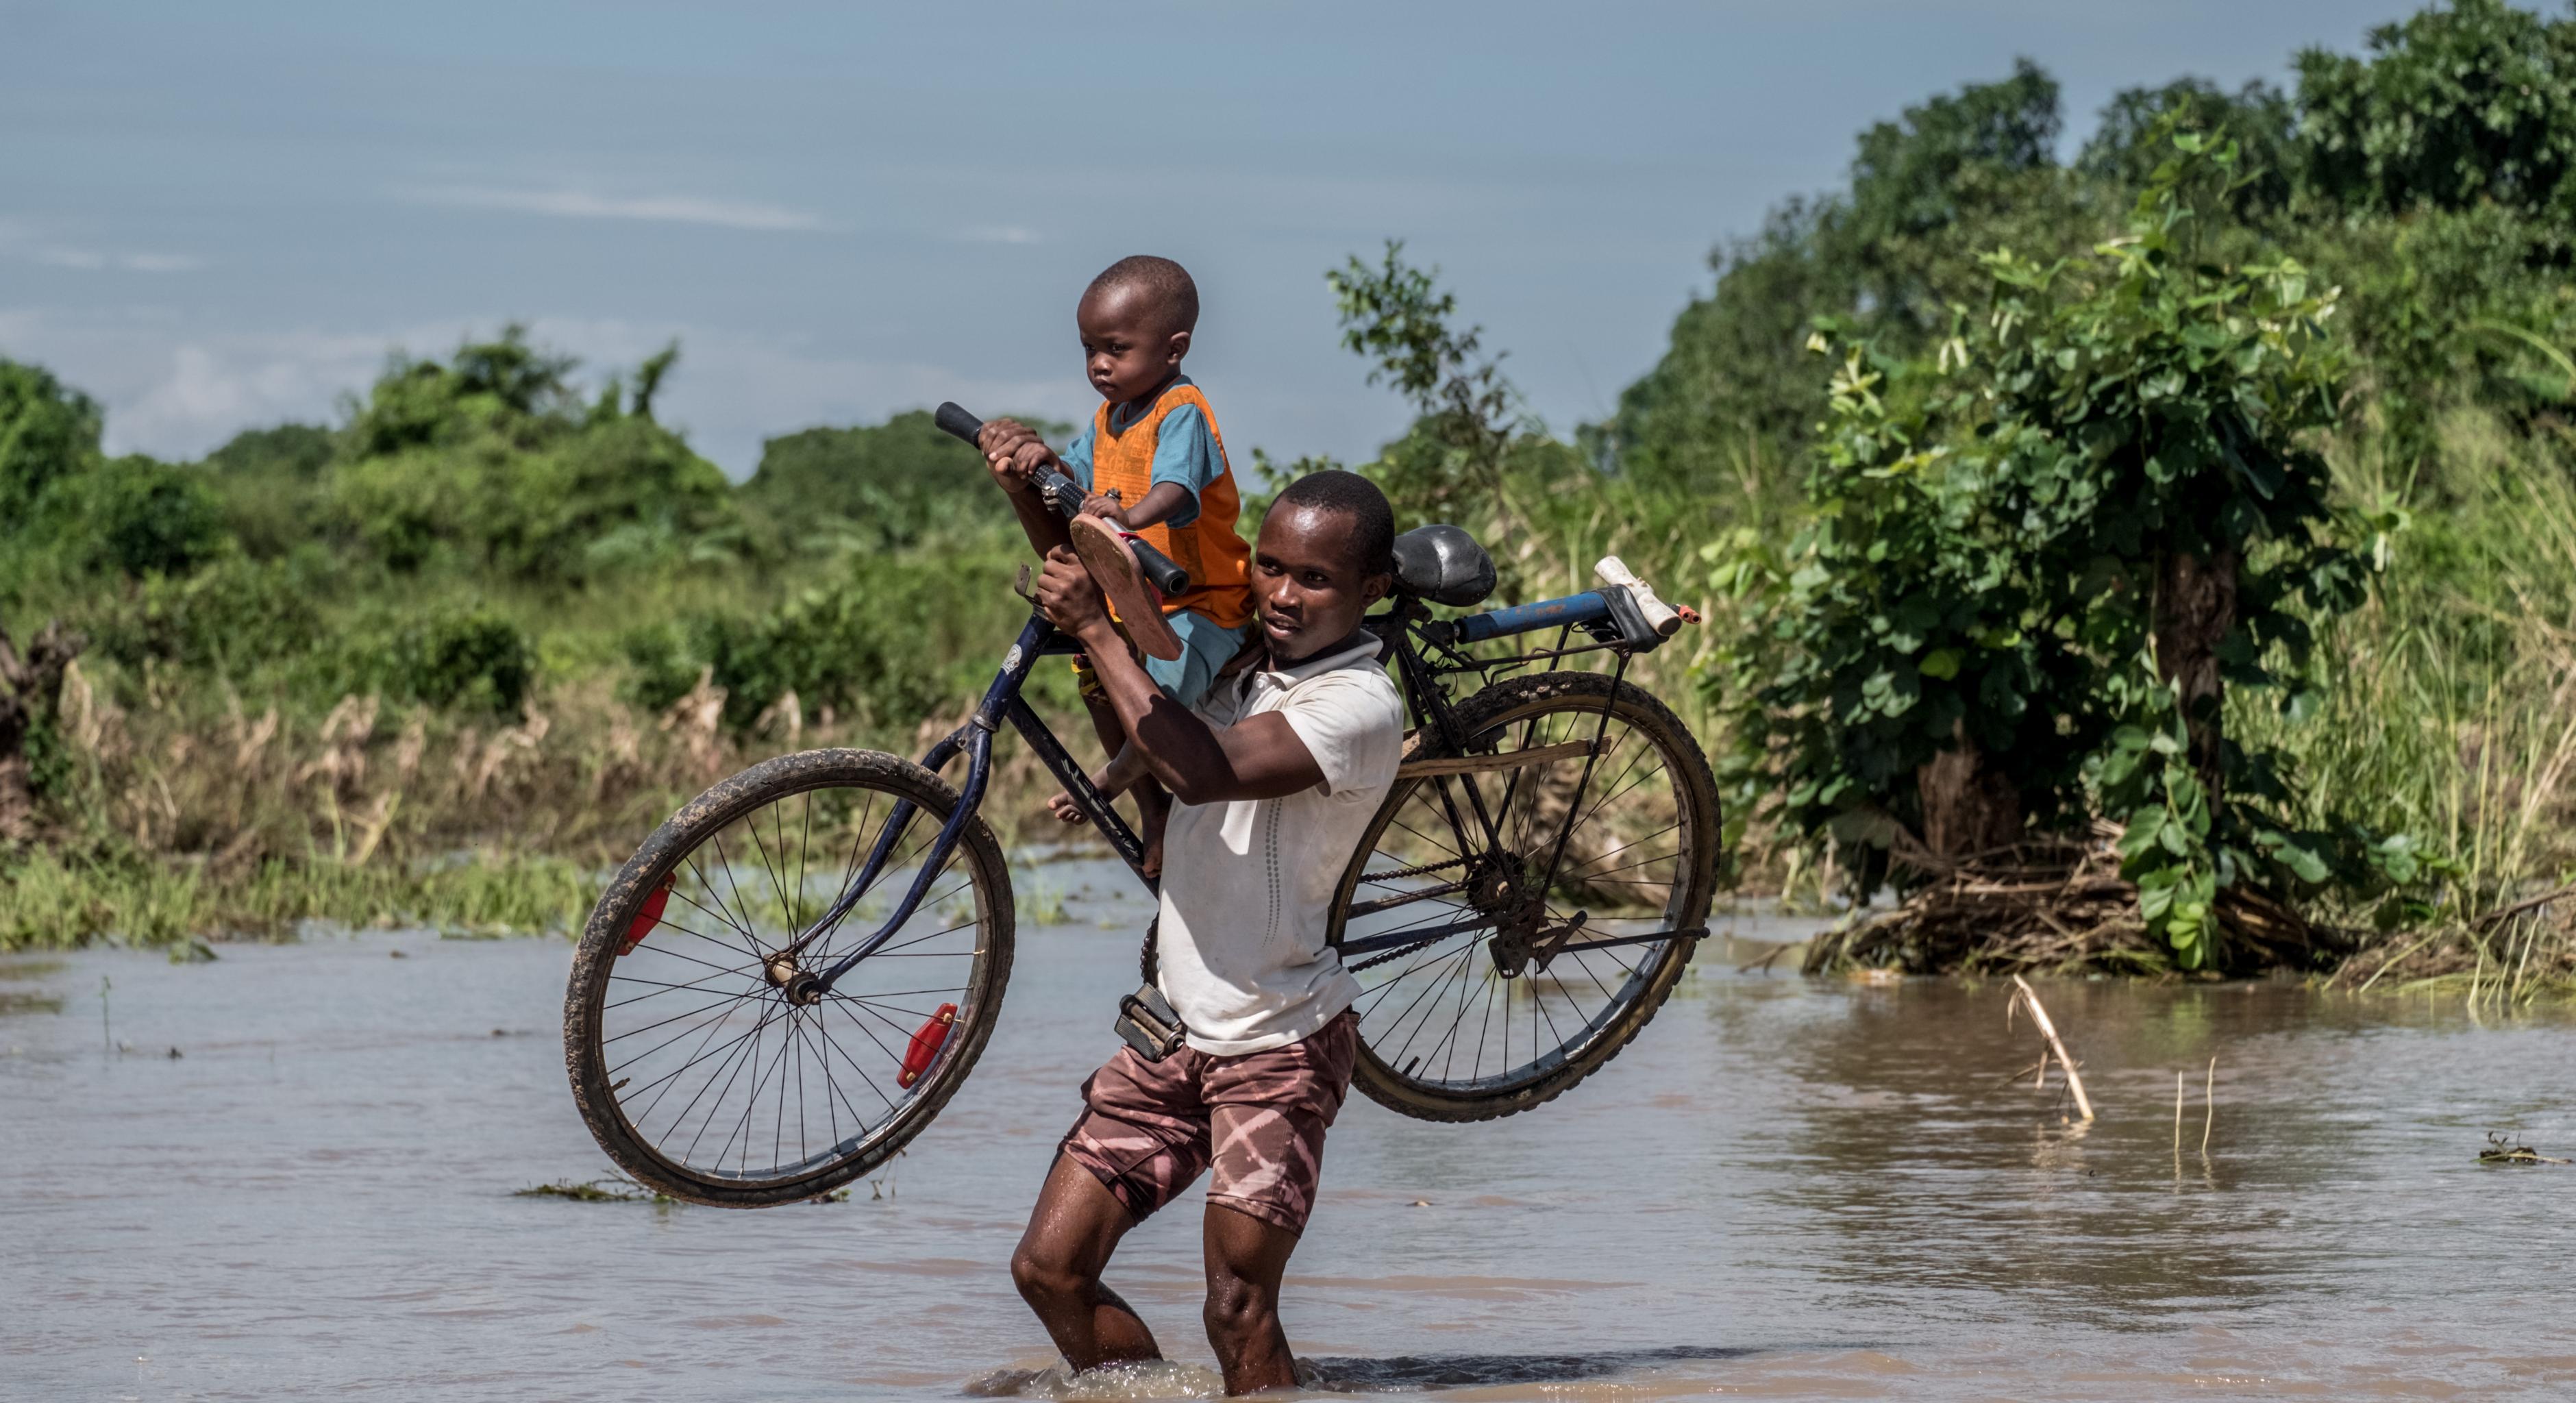 Ein Mann läuft durch Wassermassen während er ein Fahrrad und ein Kind trägt